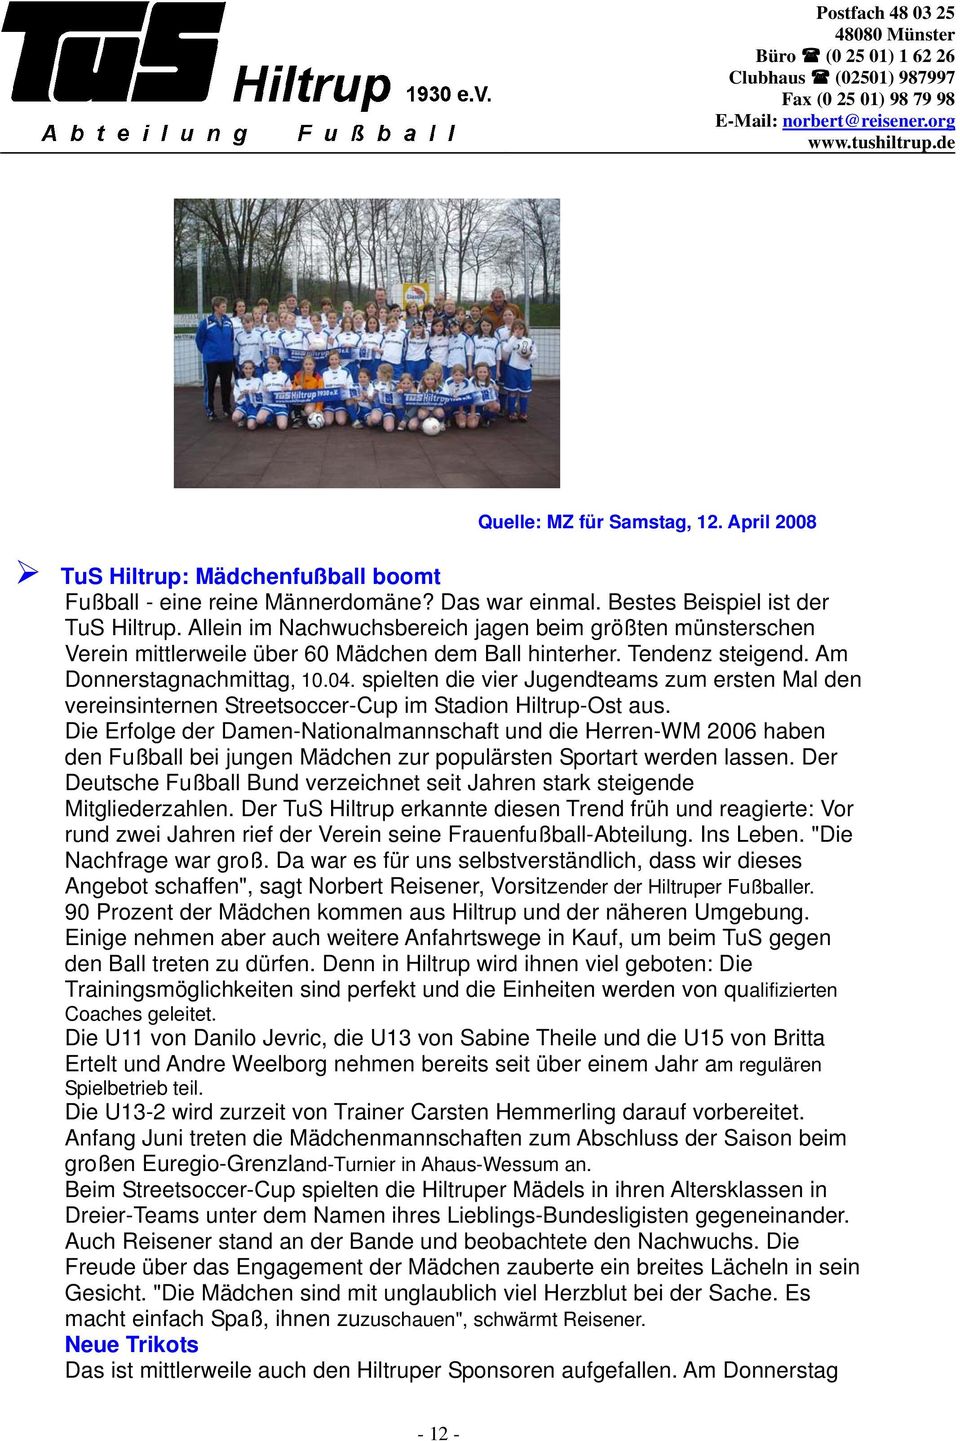 spielten die vier Jugendteams zum ersten Mal den vereinsinternen Streetsoccer-Cup im Stadion Hiltrup-Ost aus.